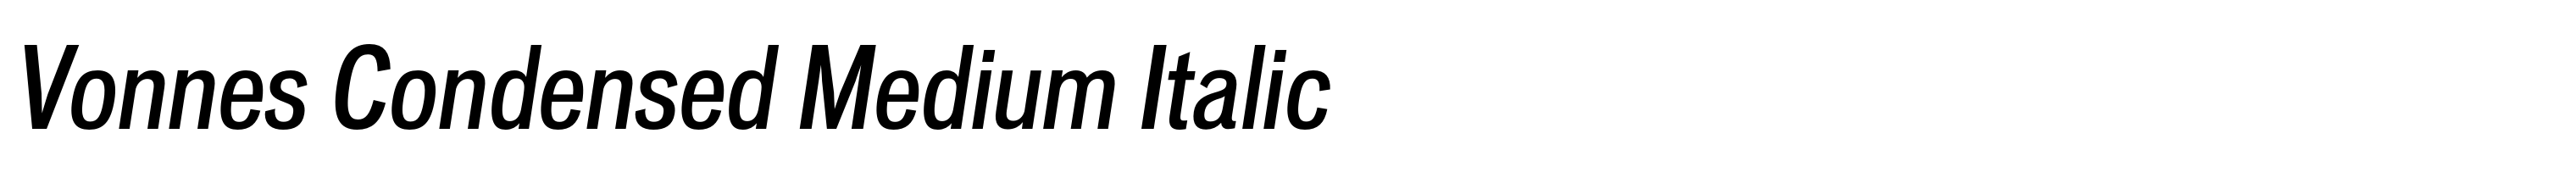 Vonnes Condensed Medium Italic